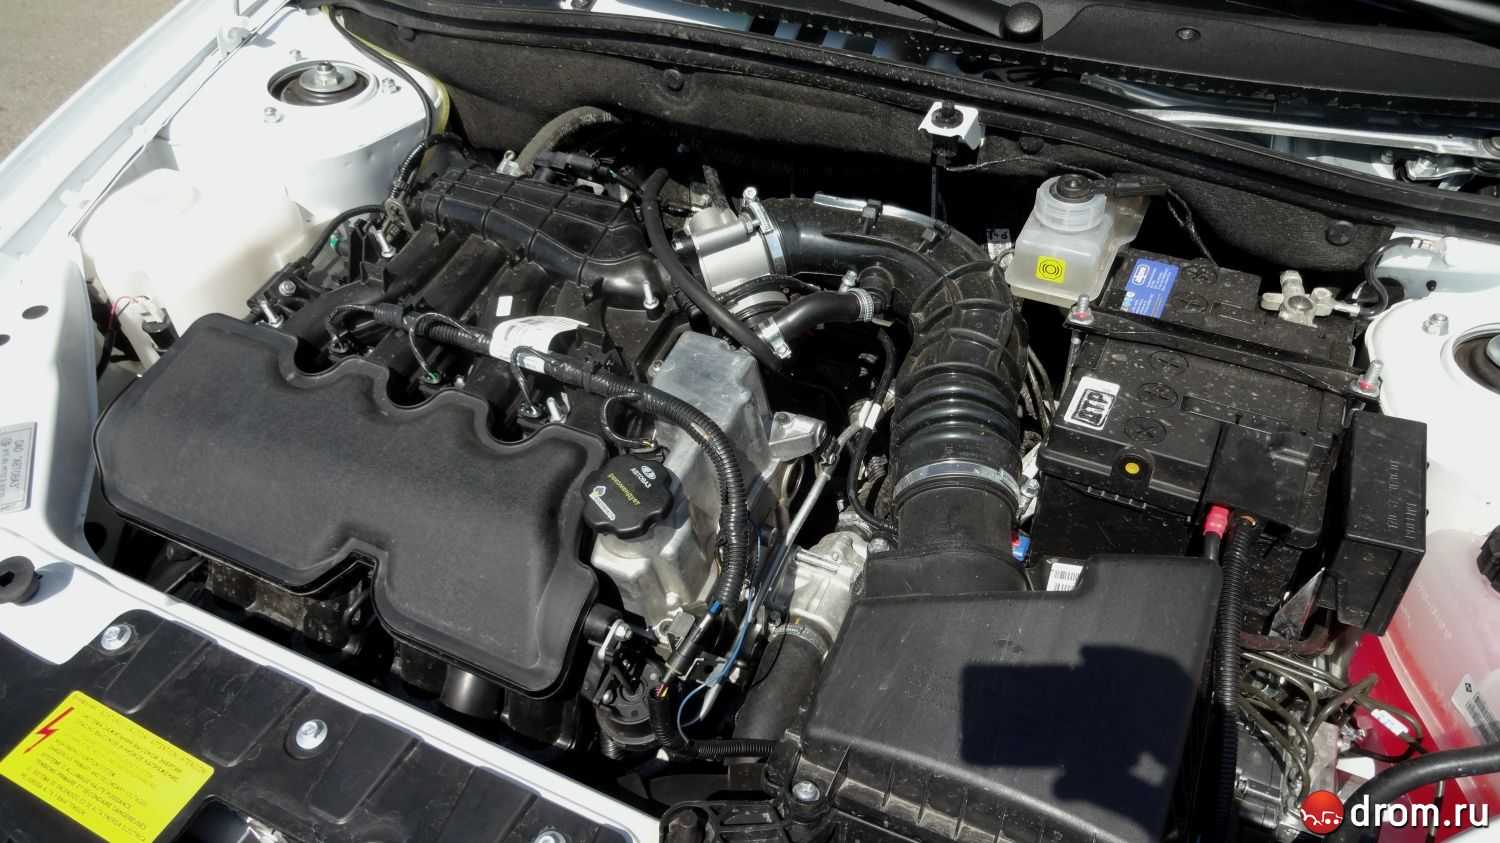 Двигатель ваз 21127, технические характеристики, какое масло лить, ремонт двигателя 21127, доработки и тюнинг, схема устройства, рекомендации по обслуживанию